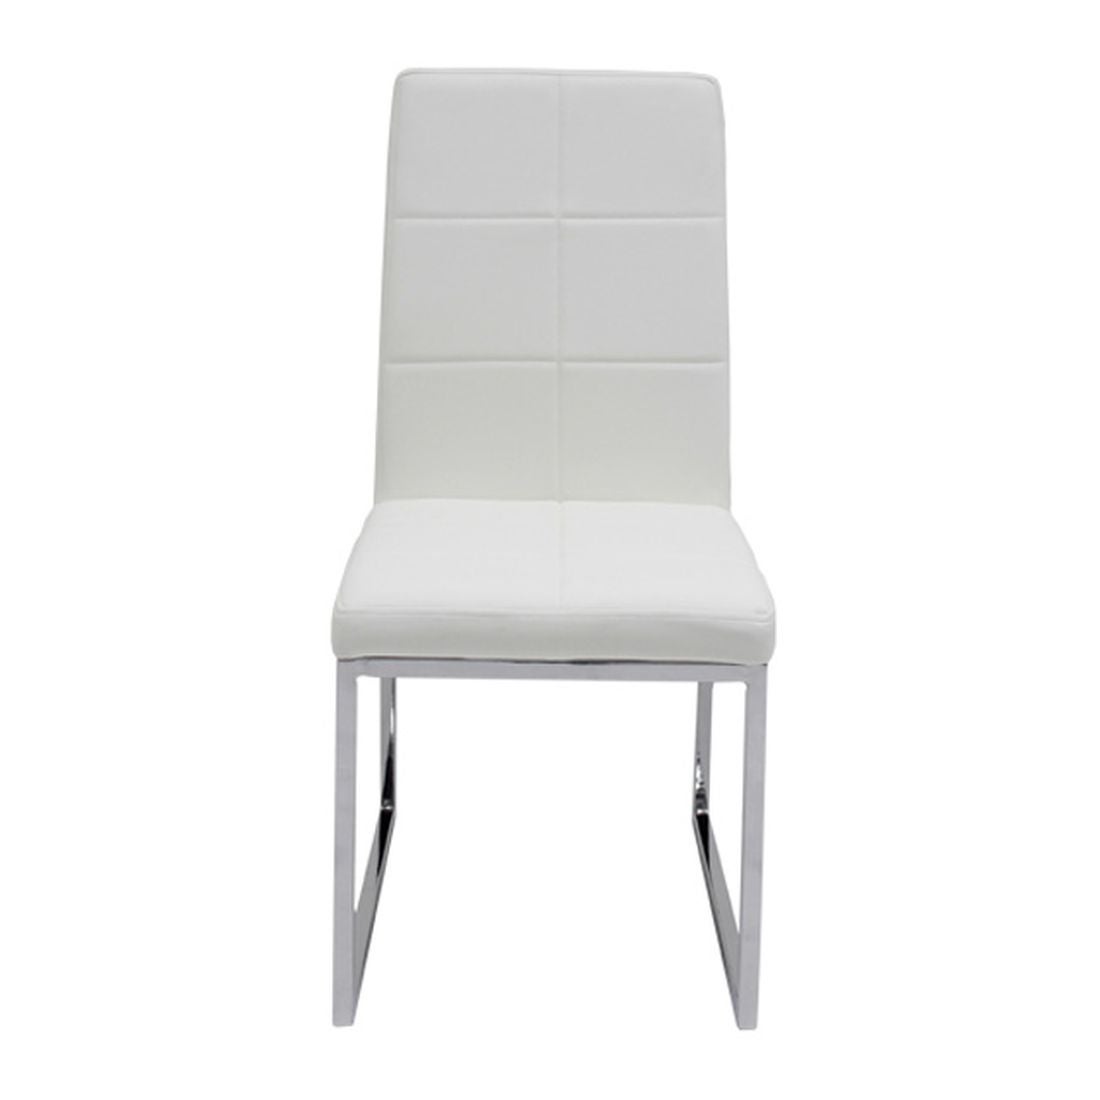 เก้าอี้ทานอาหาร เก้าอี้เหล็กเบาะหนัง รุ่น Talk-SB Design Square